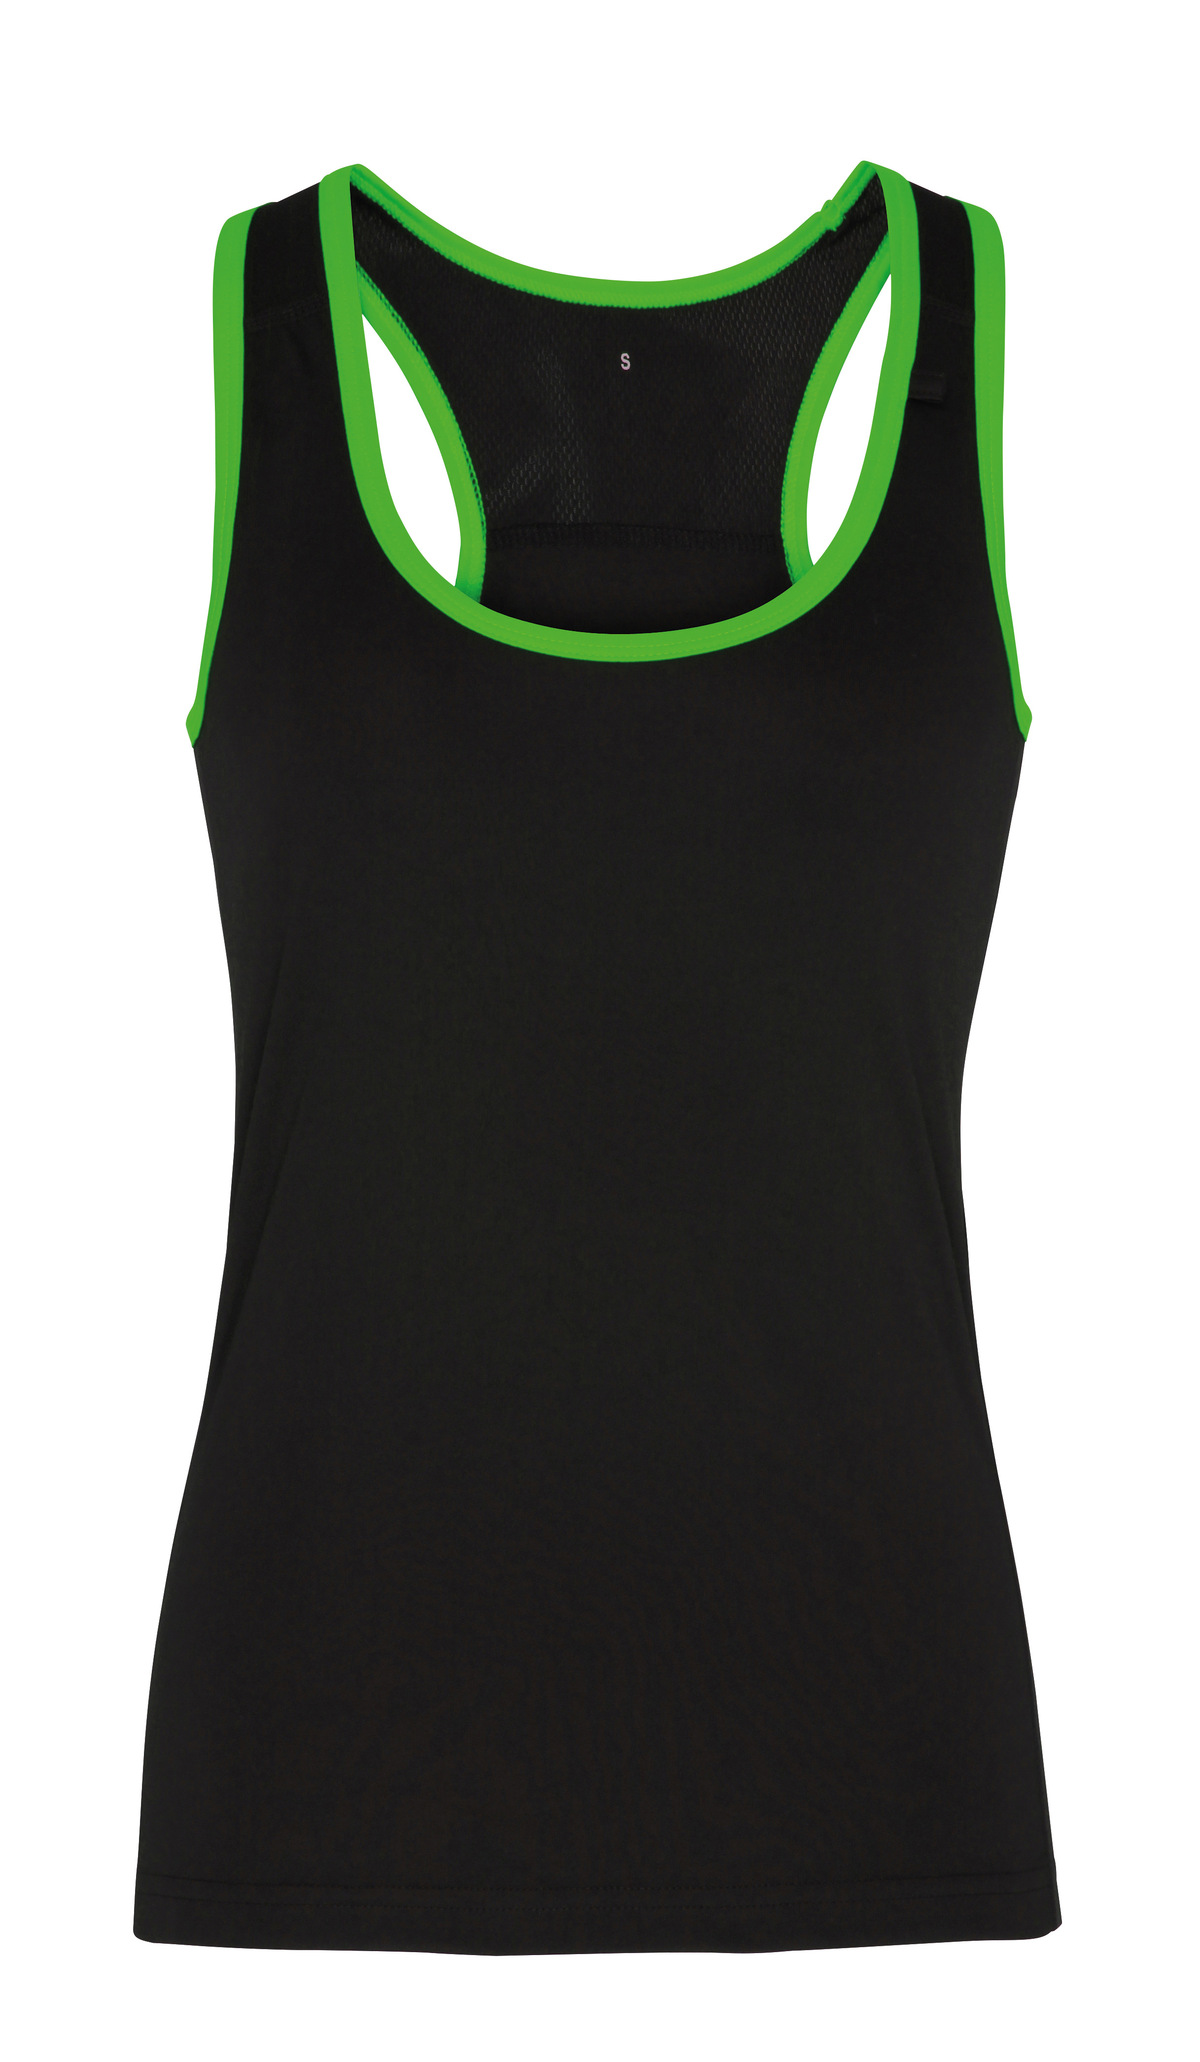 TriDri Women's Panelled Fitness Vest - Black/Lightning Green